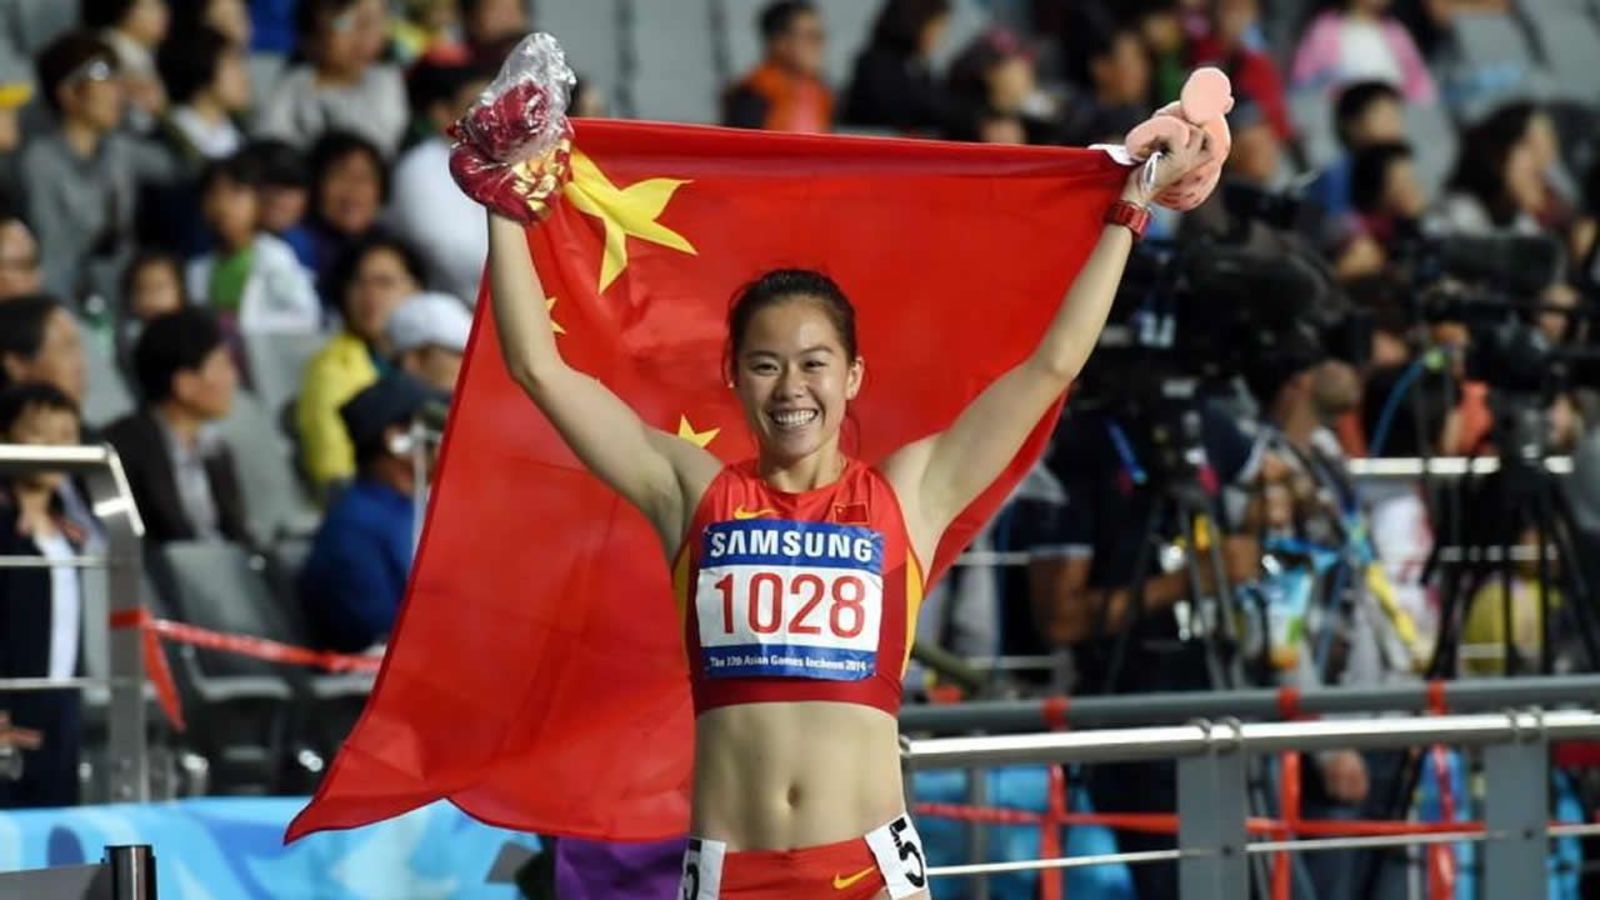 La velocista china Wu Shuijiao dio positivo por norandrosterona y fue castigada por cuatro años.